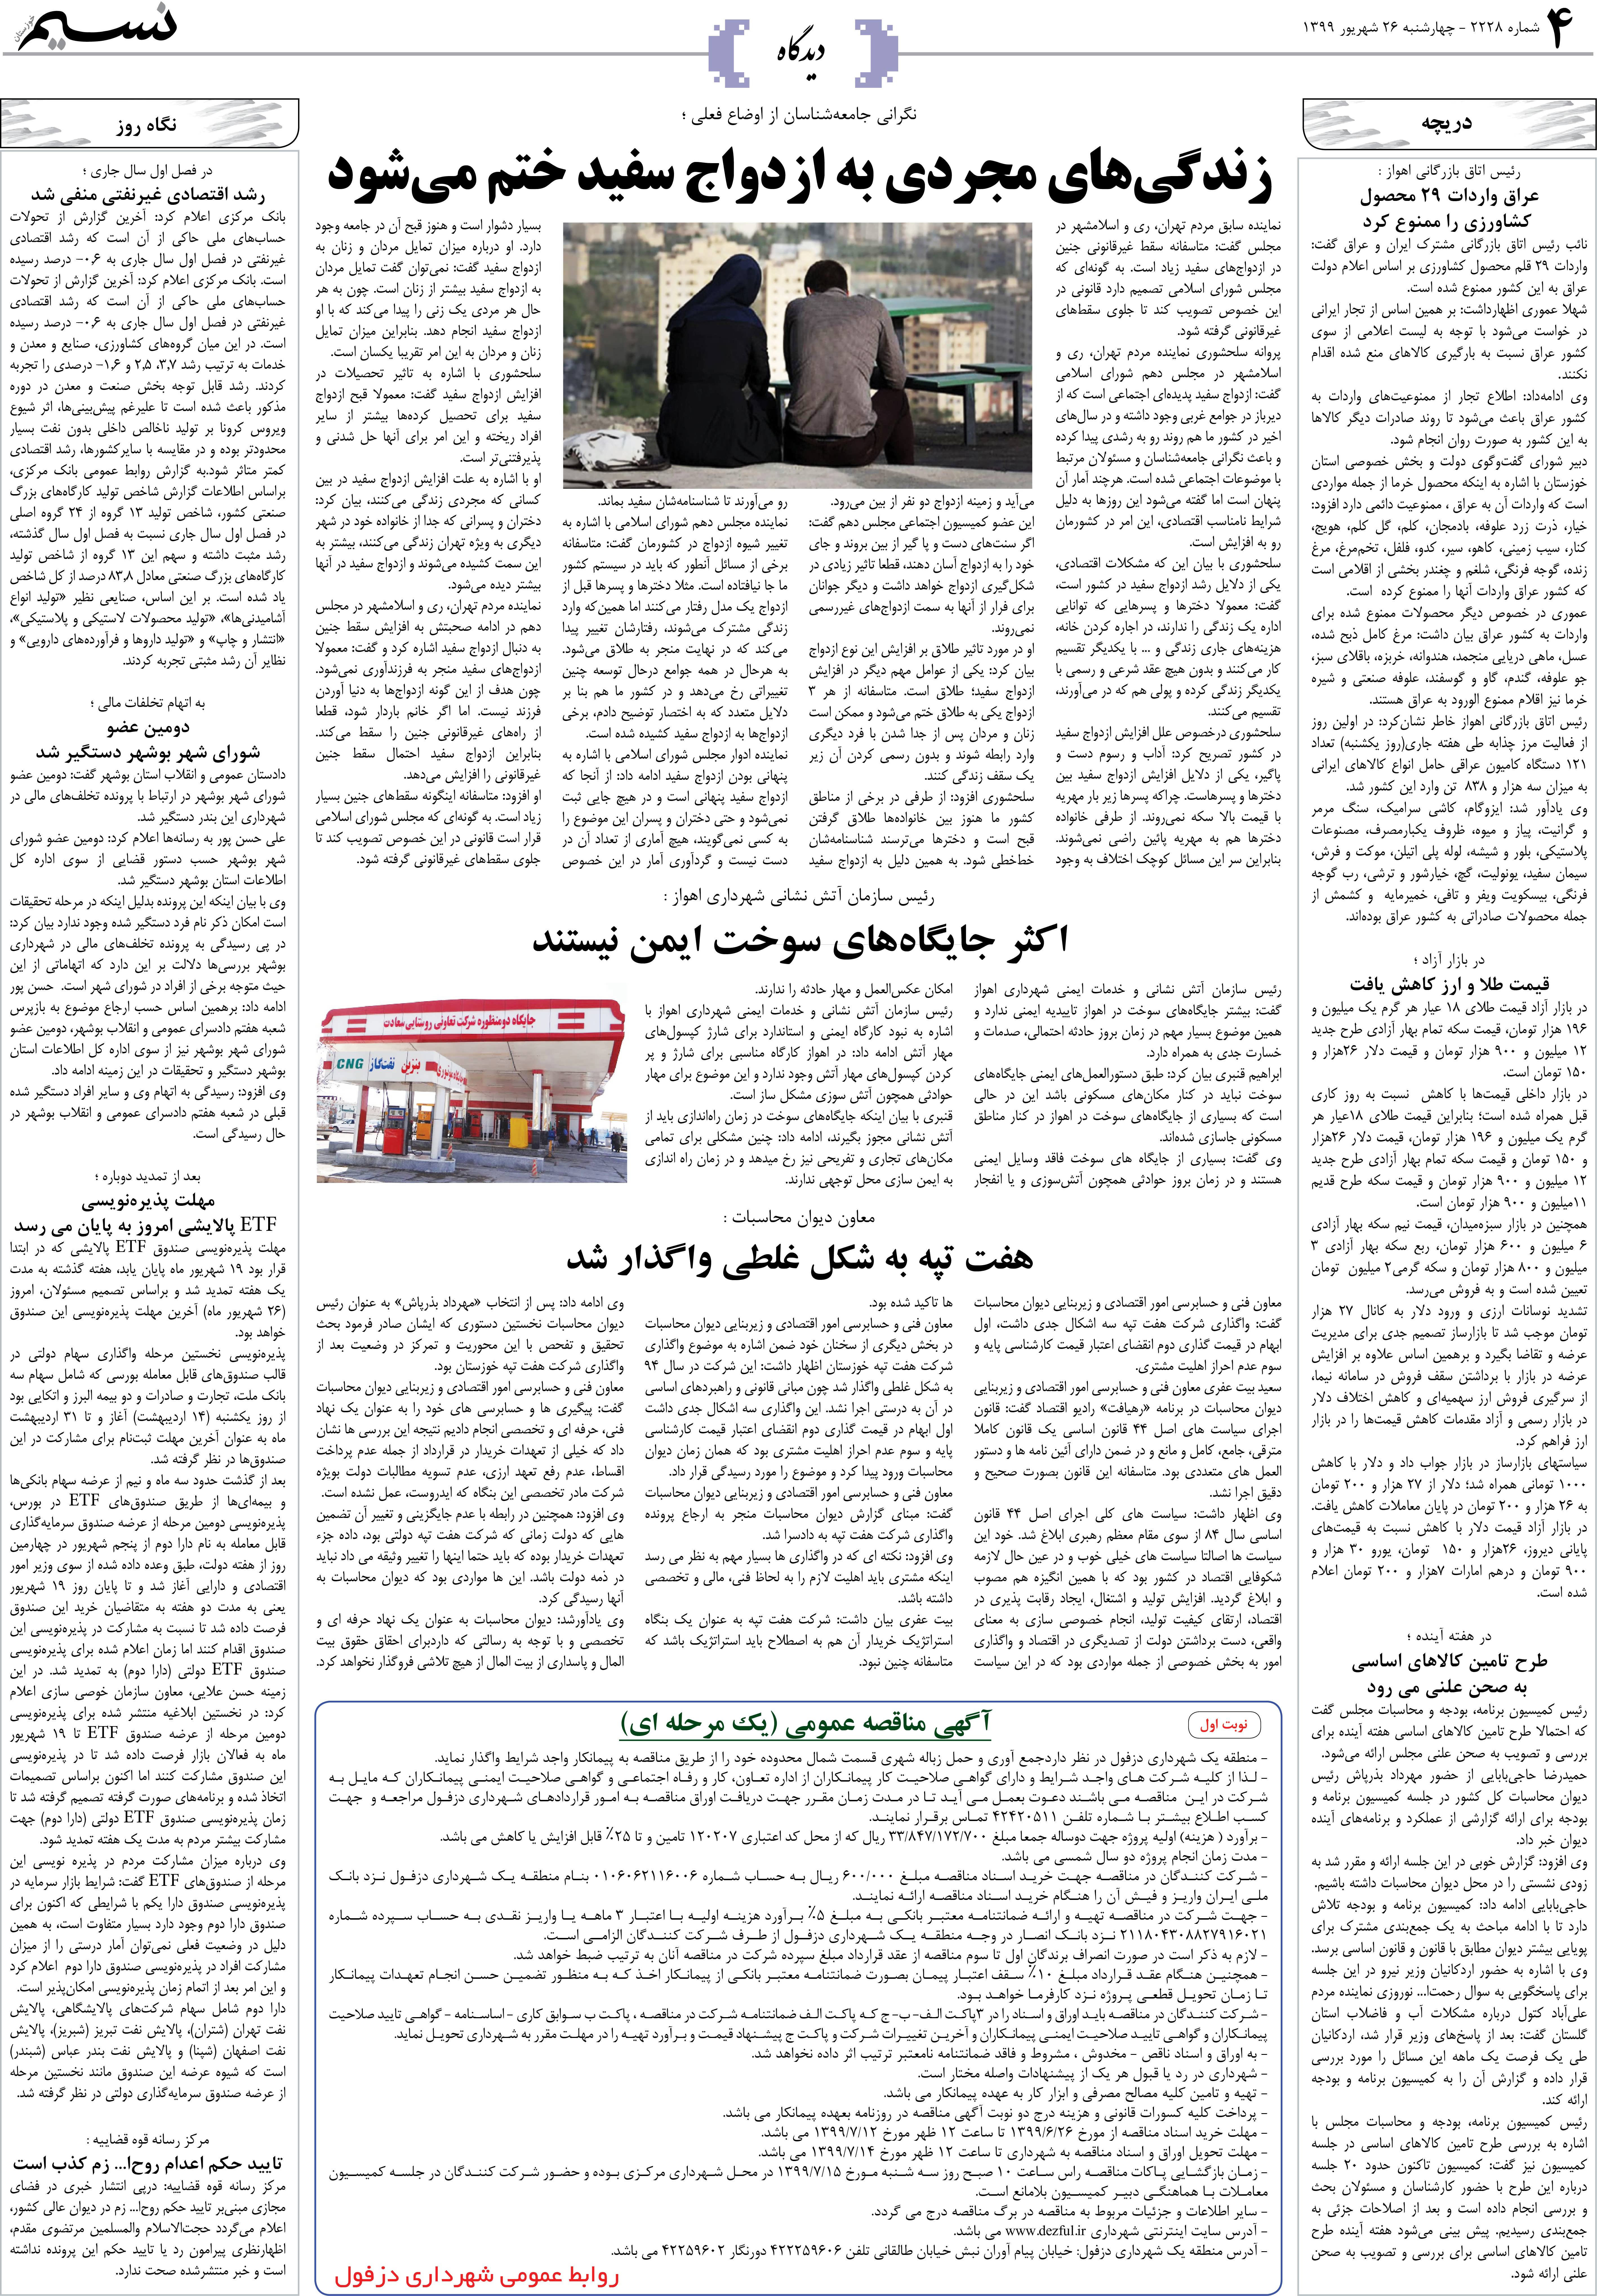 صفحه دیدگاه روزنامه نسیم شماره 2228